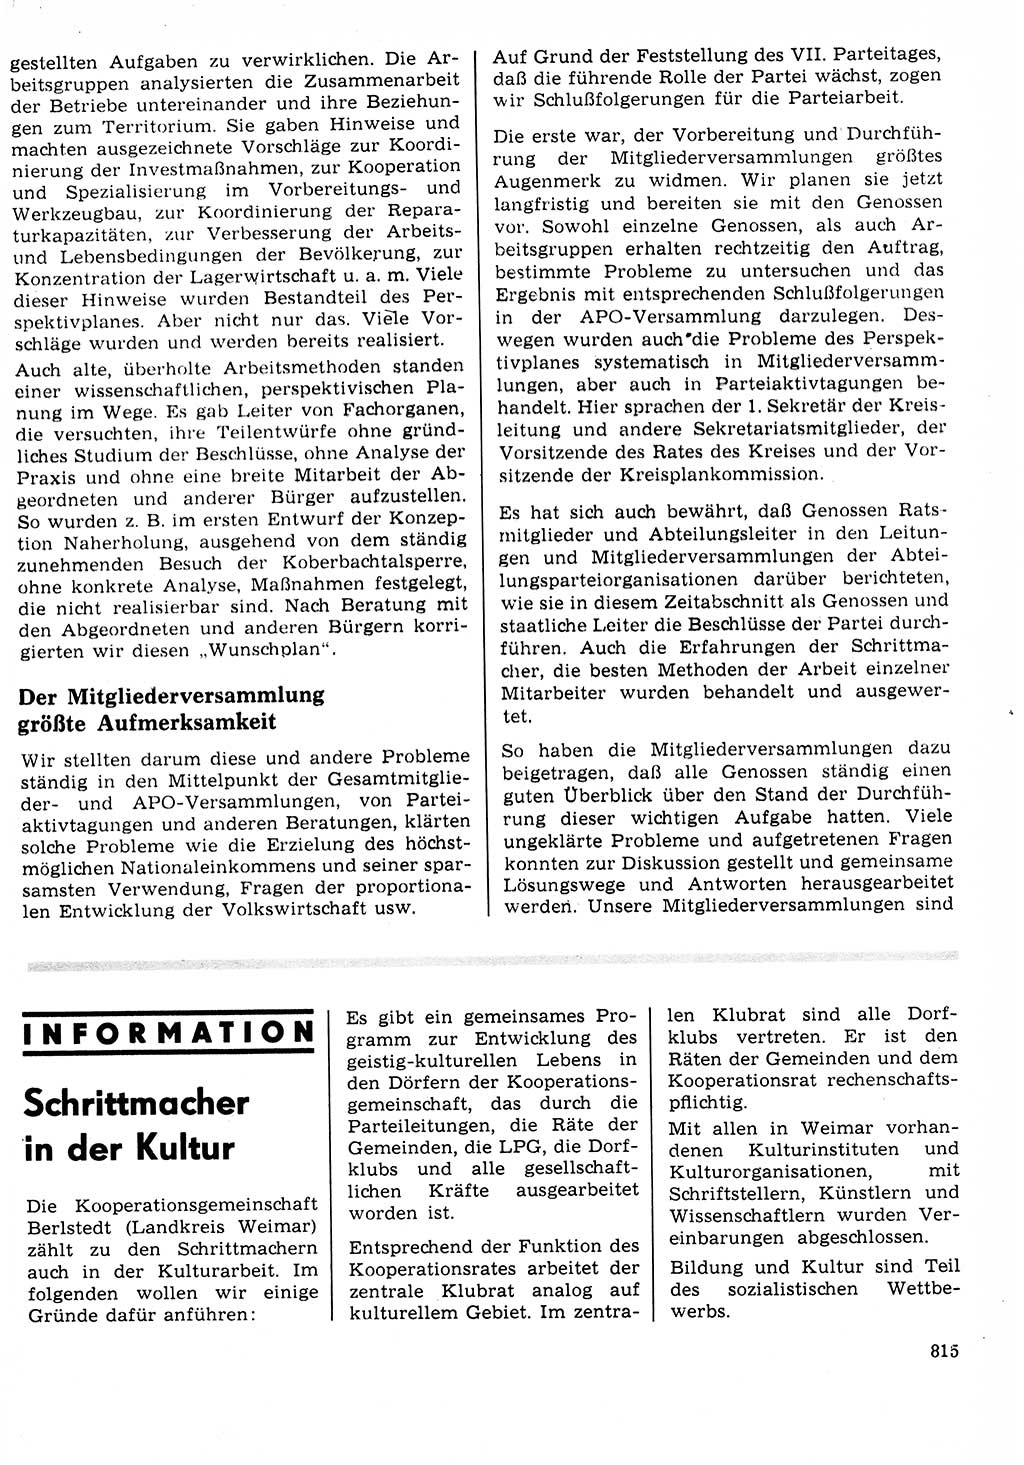 Neuer Weg (NW), Organ des Zentralkomitees (ZK) der SED (Sozialistische Einheitspartei Deutschlands) für Fragen des Parteilebens, 23. Jahrgang [Deutsche Demokratische Republik (DDR)] 1968, Seite 799 (NW ZK SED DDR 1968, S. 799)